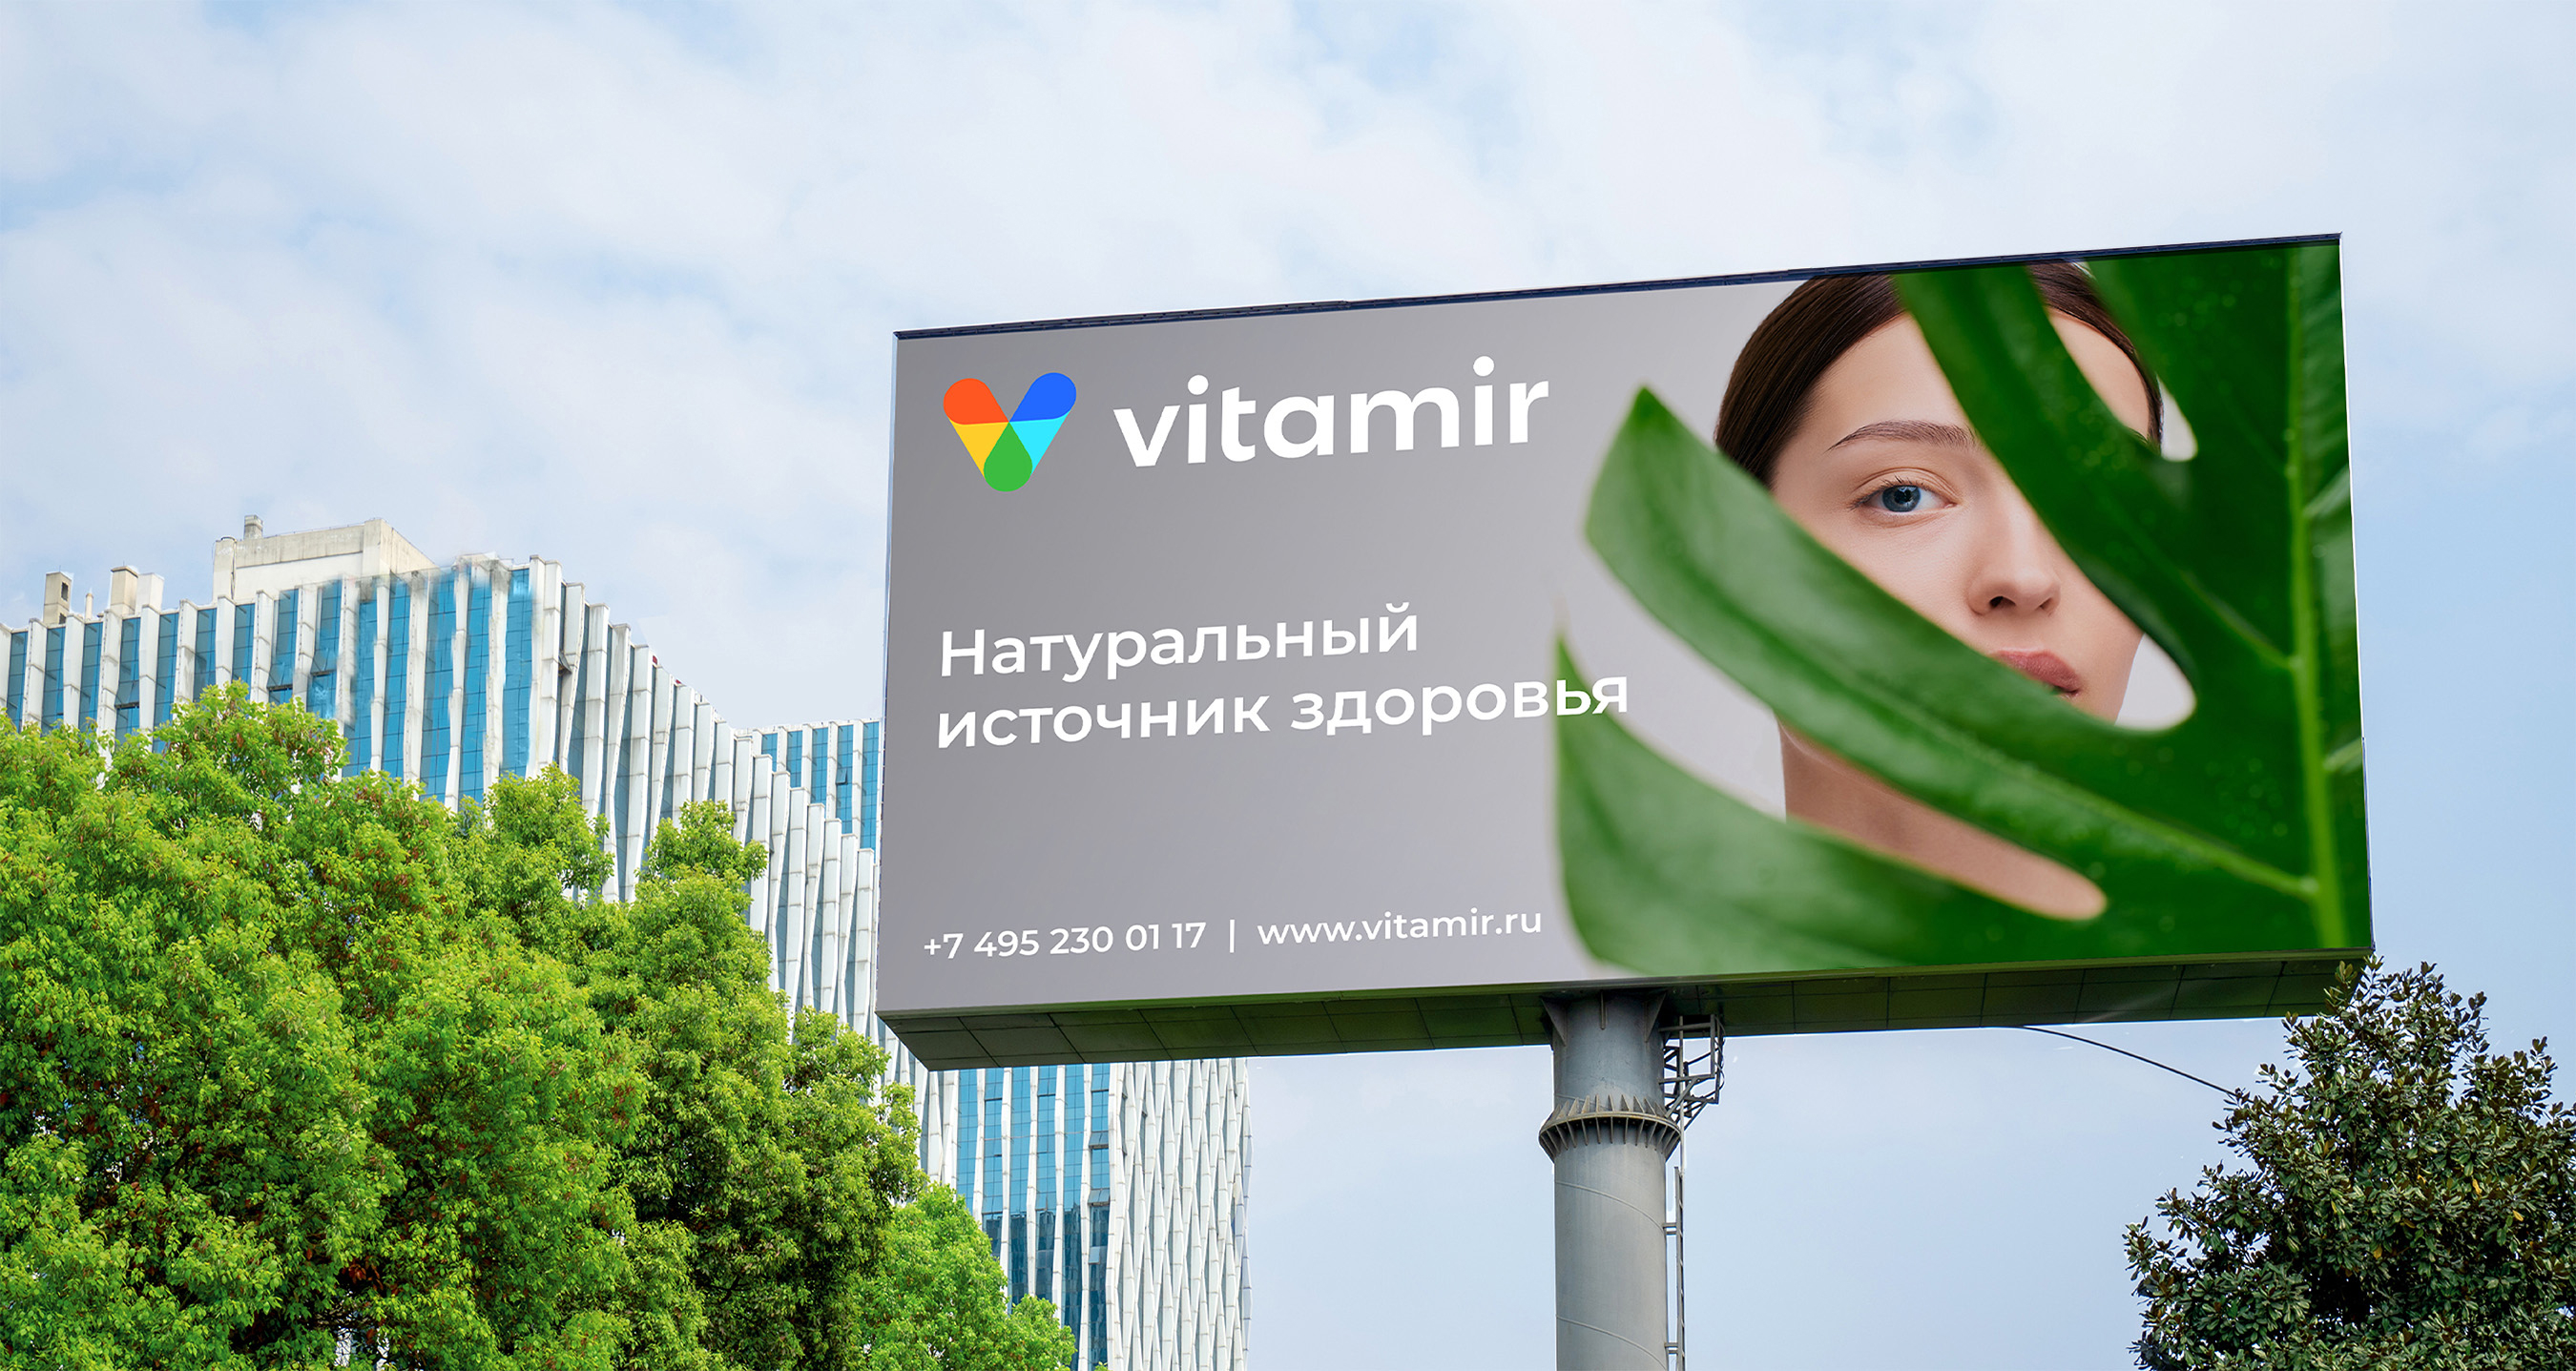 Дизайн рекламы Vitamir